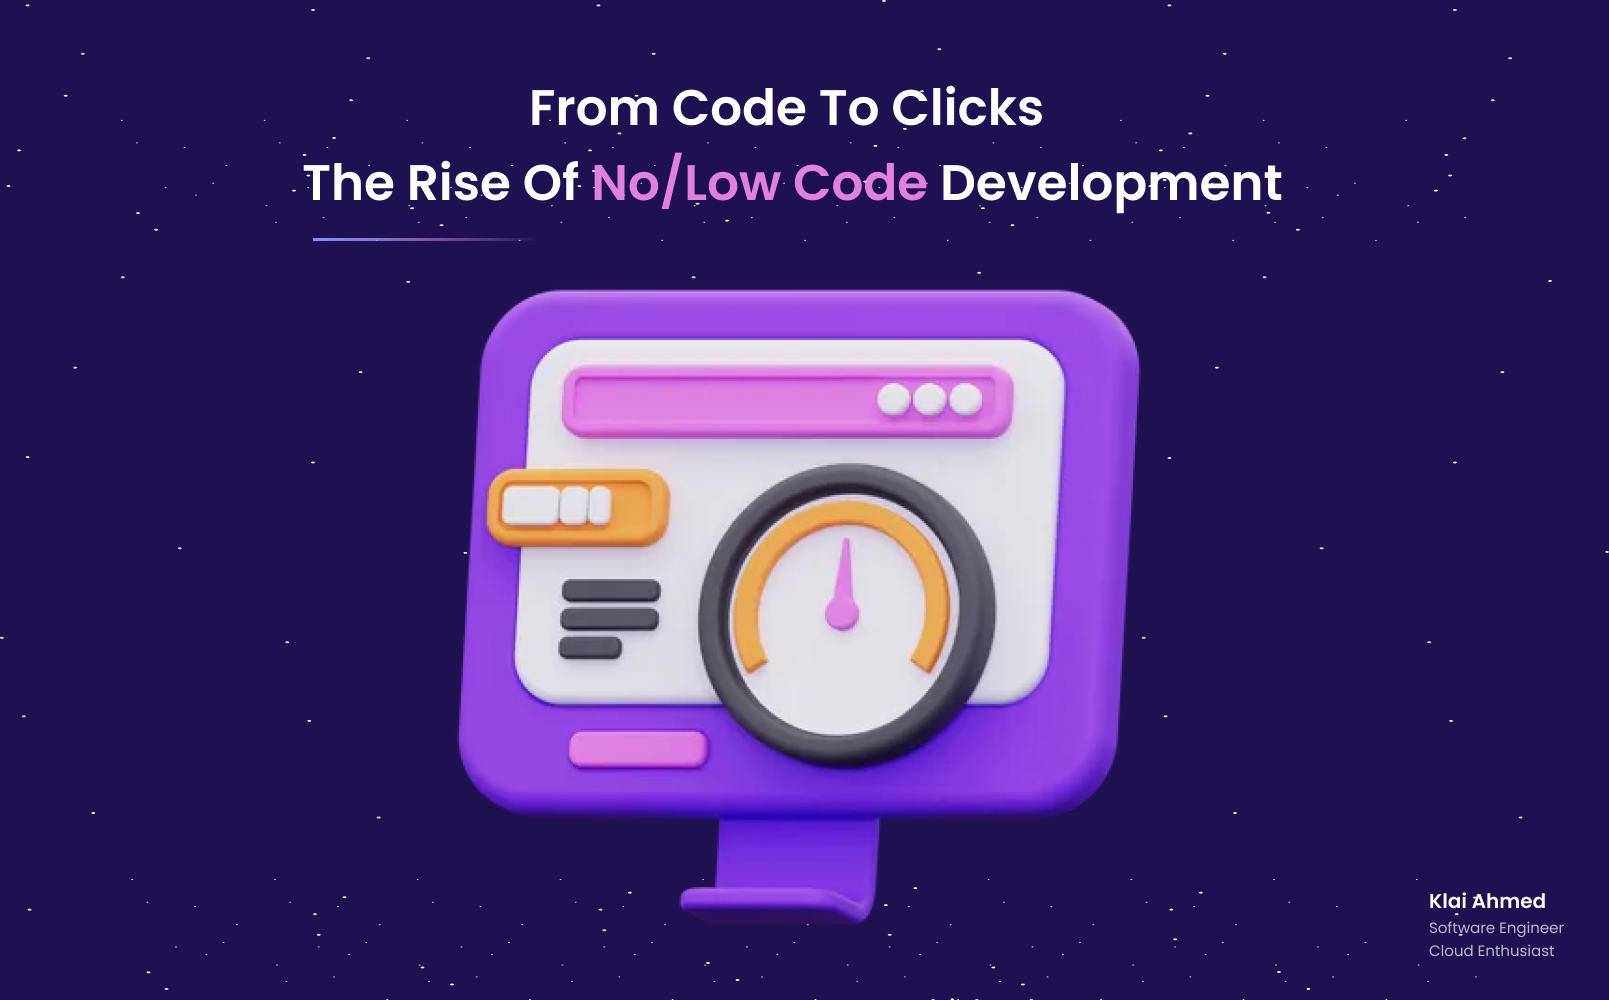 Die Zukunft des Software Developments: Low Code & No Code